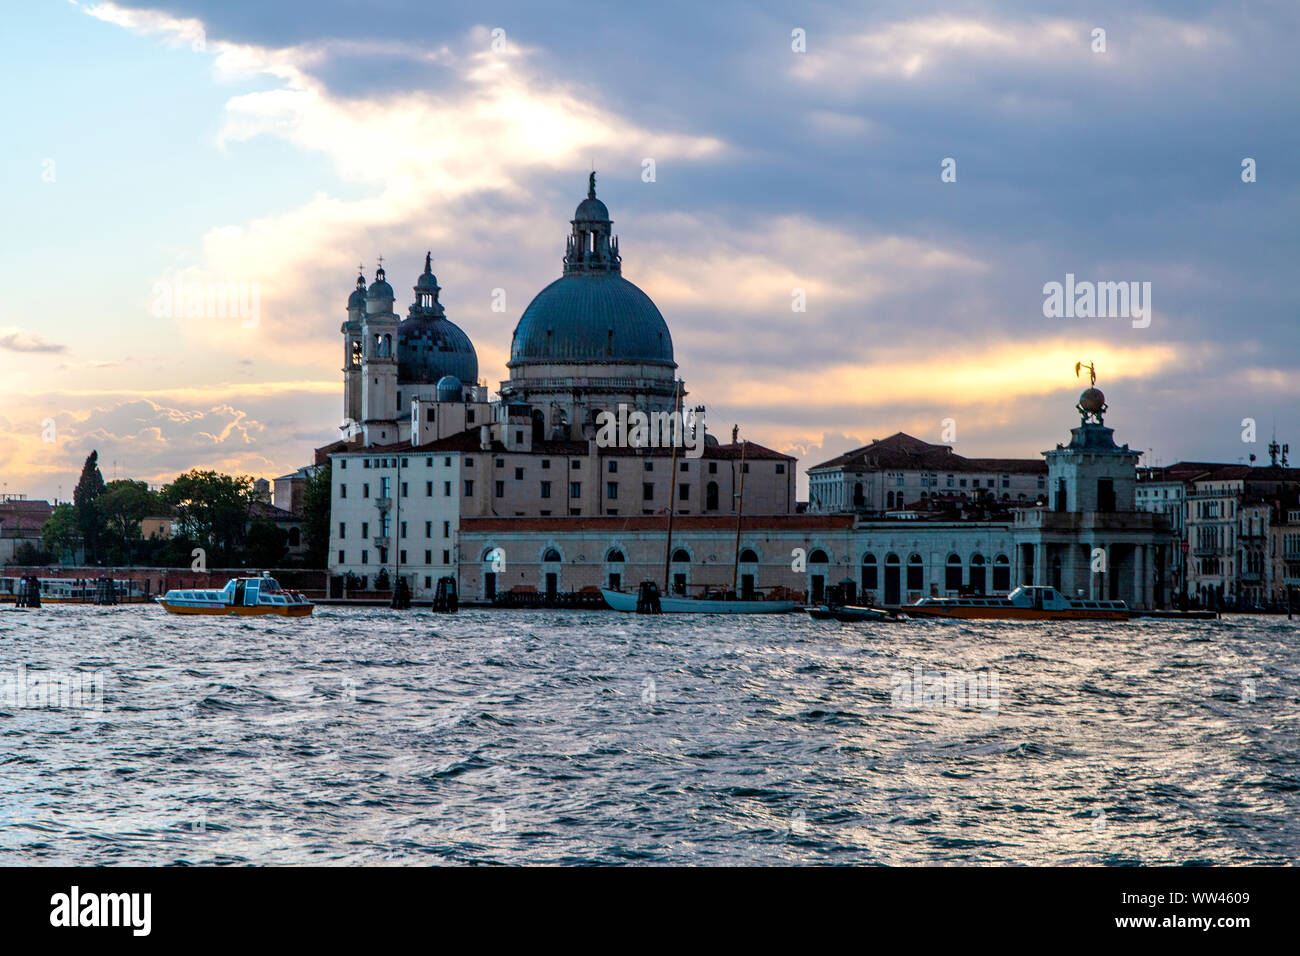 Bella y romántica ciudad de Venecia, Italia Foto de stock